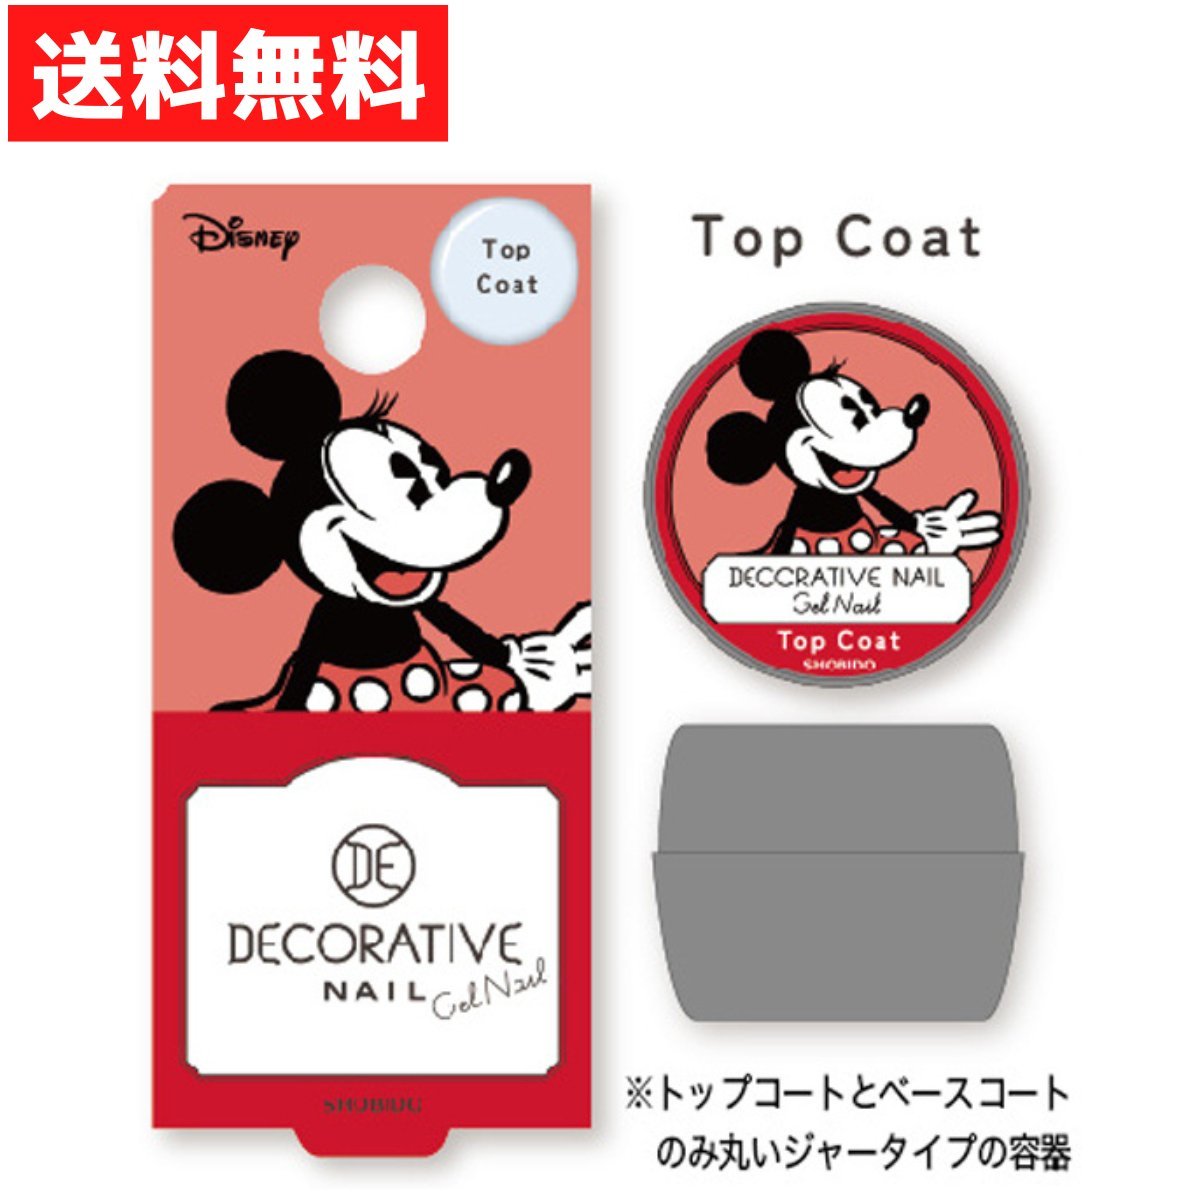 DN Minnie Mouse гель ногти верхнее покрытие . прекрасный . декоративный элемент Latte .b гель ногти Disney дизайн 4g